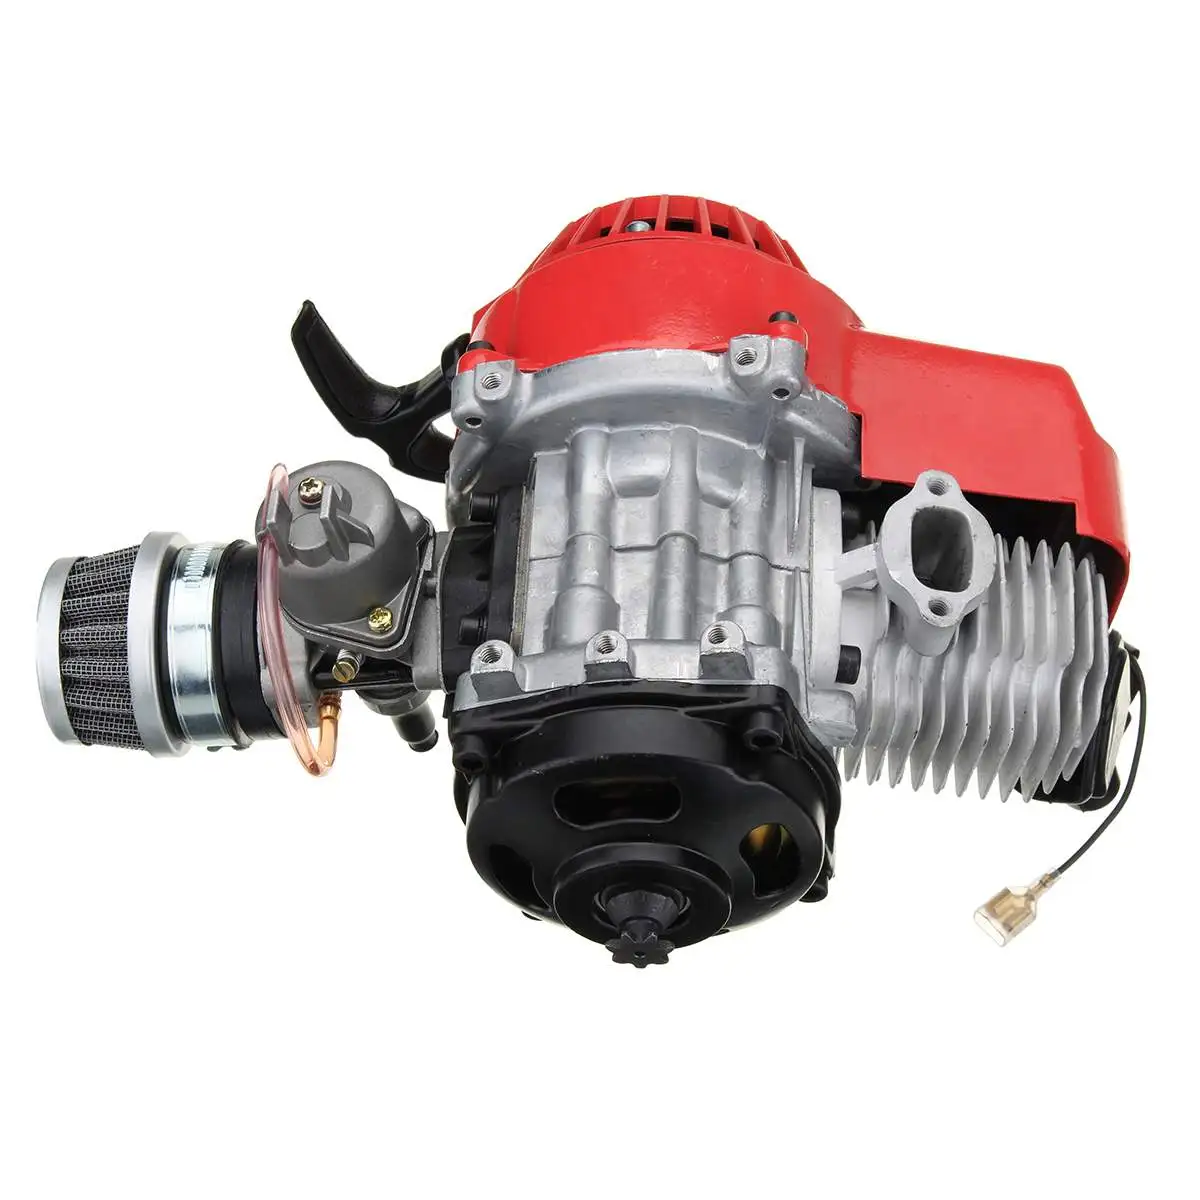 49cc 2 тактный двигатель Mototcycle в комплекте с воздушным фильтром CARB Bike Mini Dirt ATV Quad - Цвет: Красный